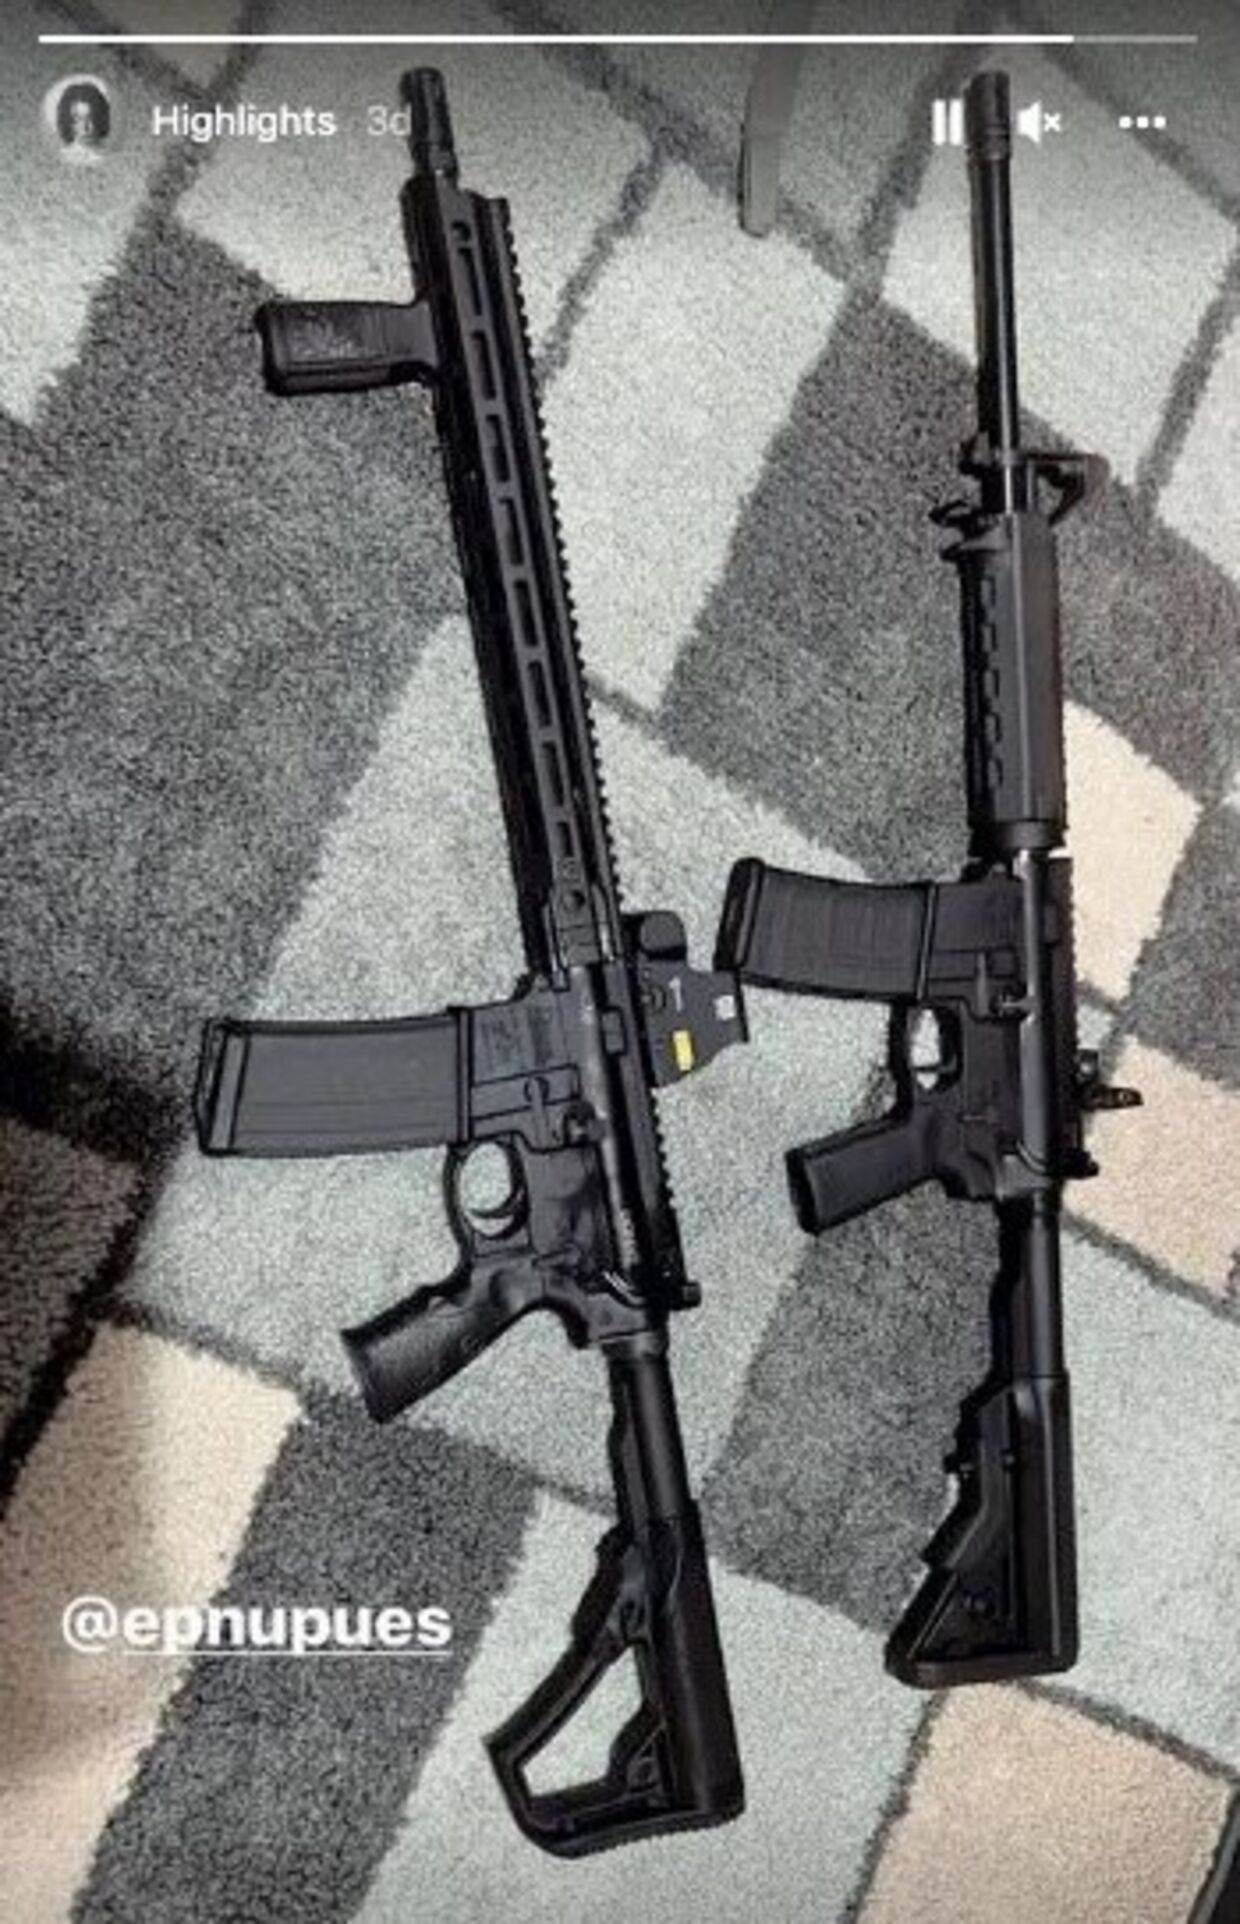 Salvador Ramos taggede kort før skyderiet en tilfældig kvinde på dette billede af to rifler.